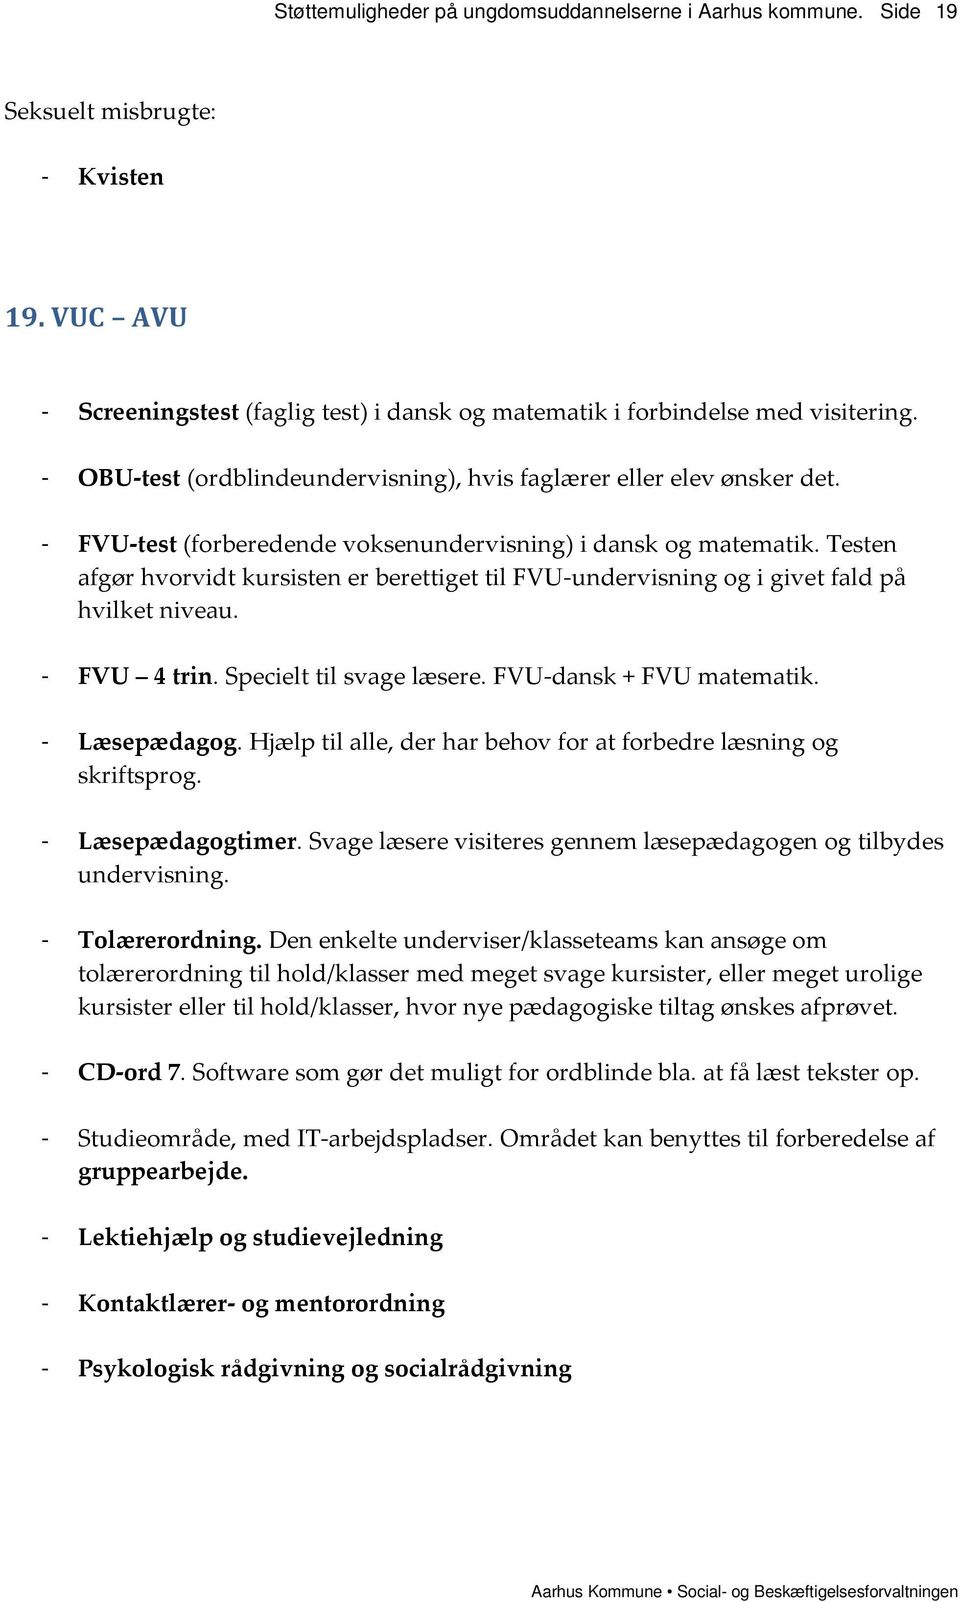 Specielt til svage læsere. FVU-dansk + FVU matematik. - Læsepædagog. Hjælp til alle, der har behov for at forbedre læsning og skriftsprog. - Læsepædagogtimer.